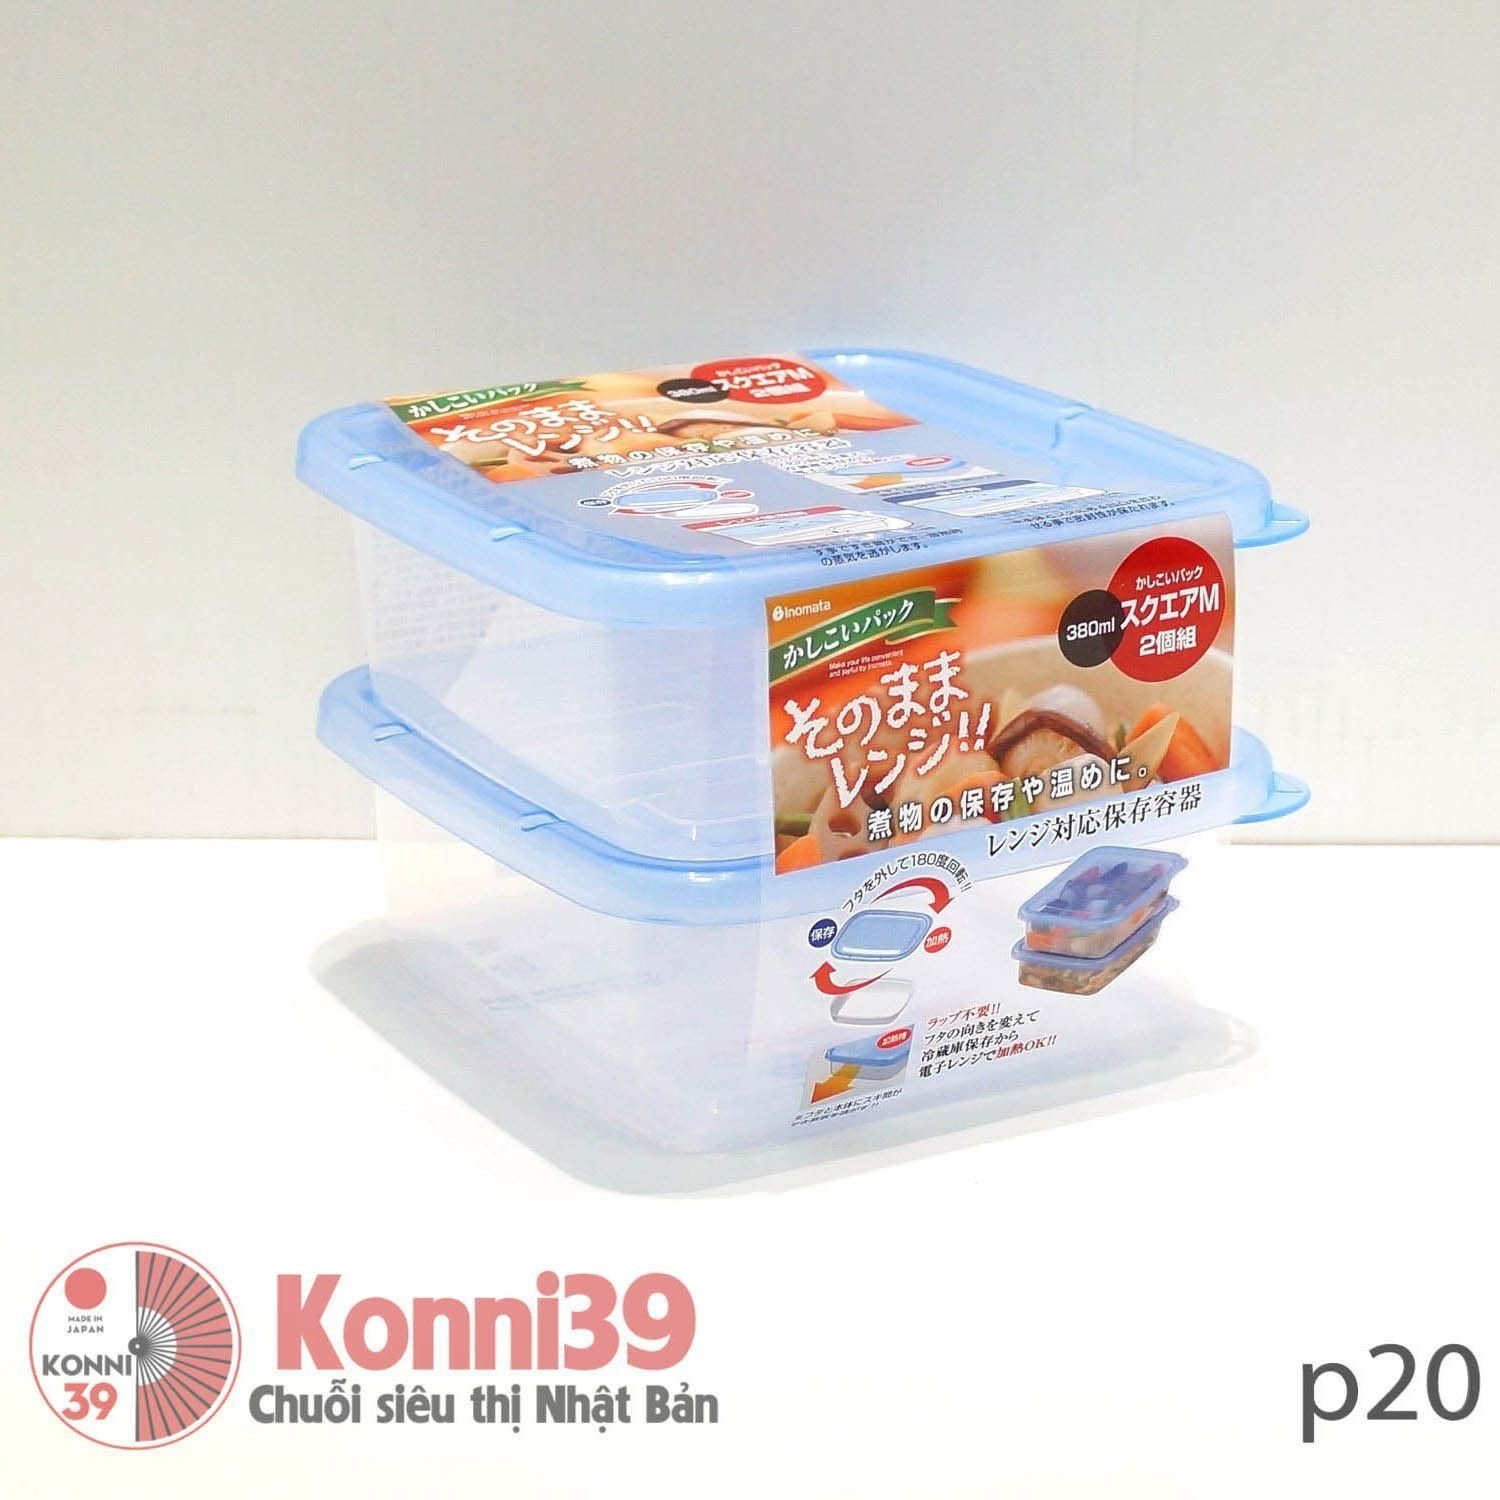 Hộp trữ thức ăn set2 380ml INOMATA-Chuỗi siêu thị Nhật Bản - MADE IN JAPAN Konni39 tại Việt Nam